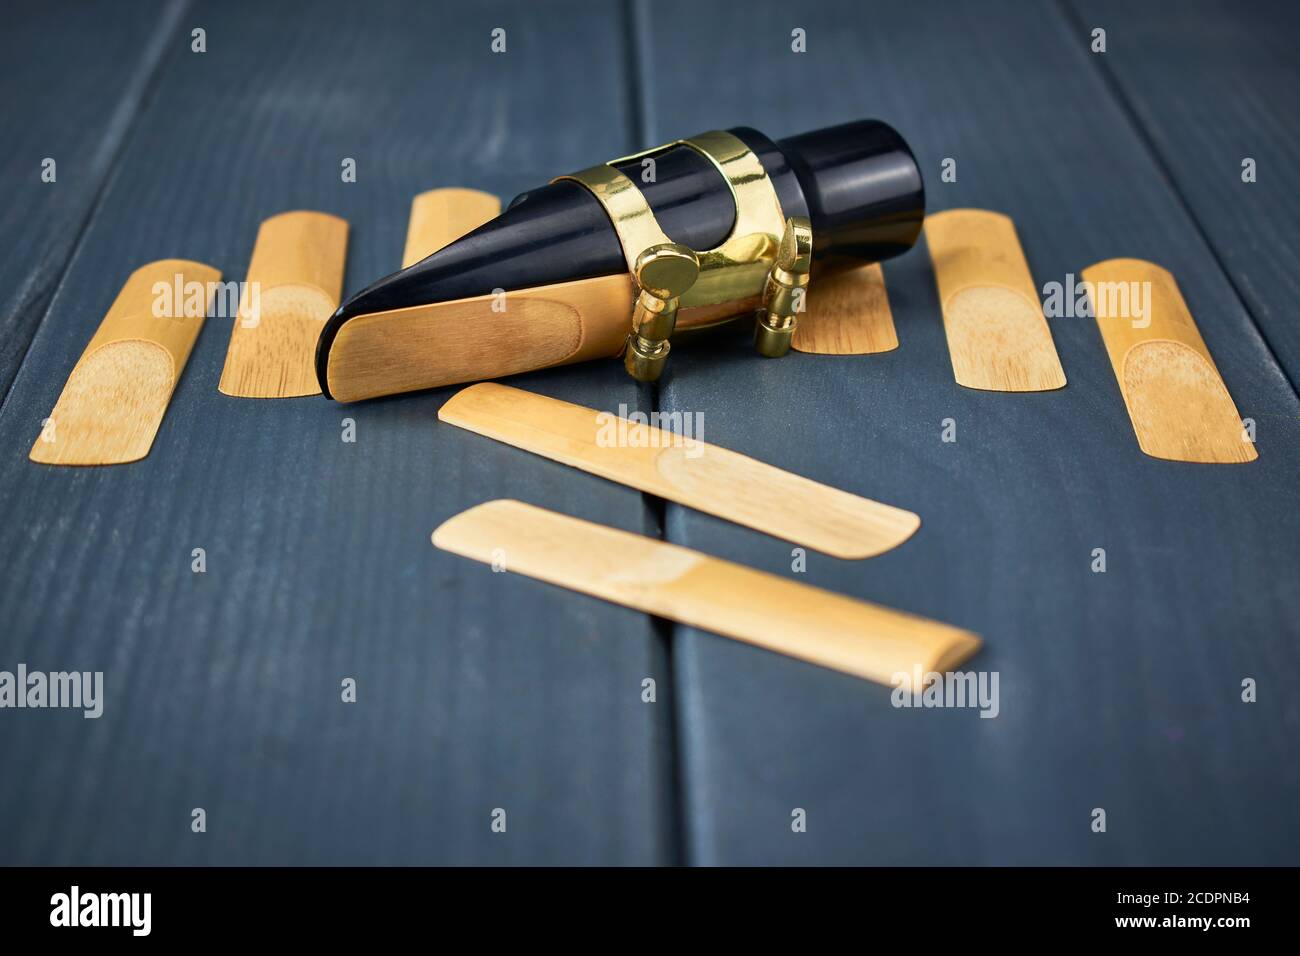 Roseaux de rechange et embout buccal saxophone avec pince et réglage doré vis sur table en bois gris Banque D'Images